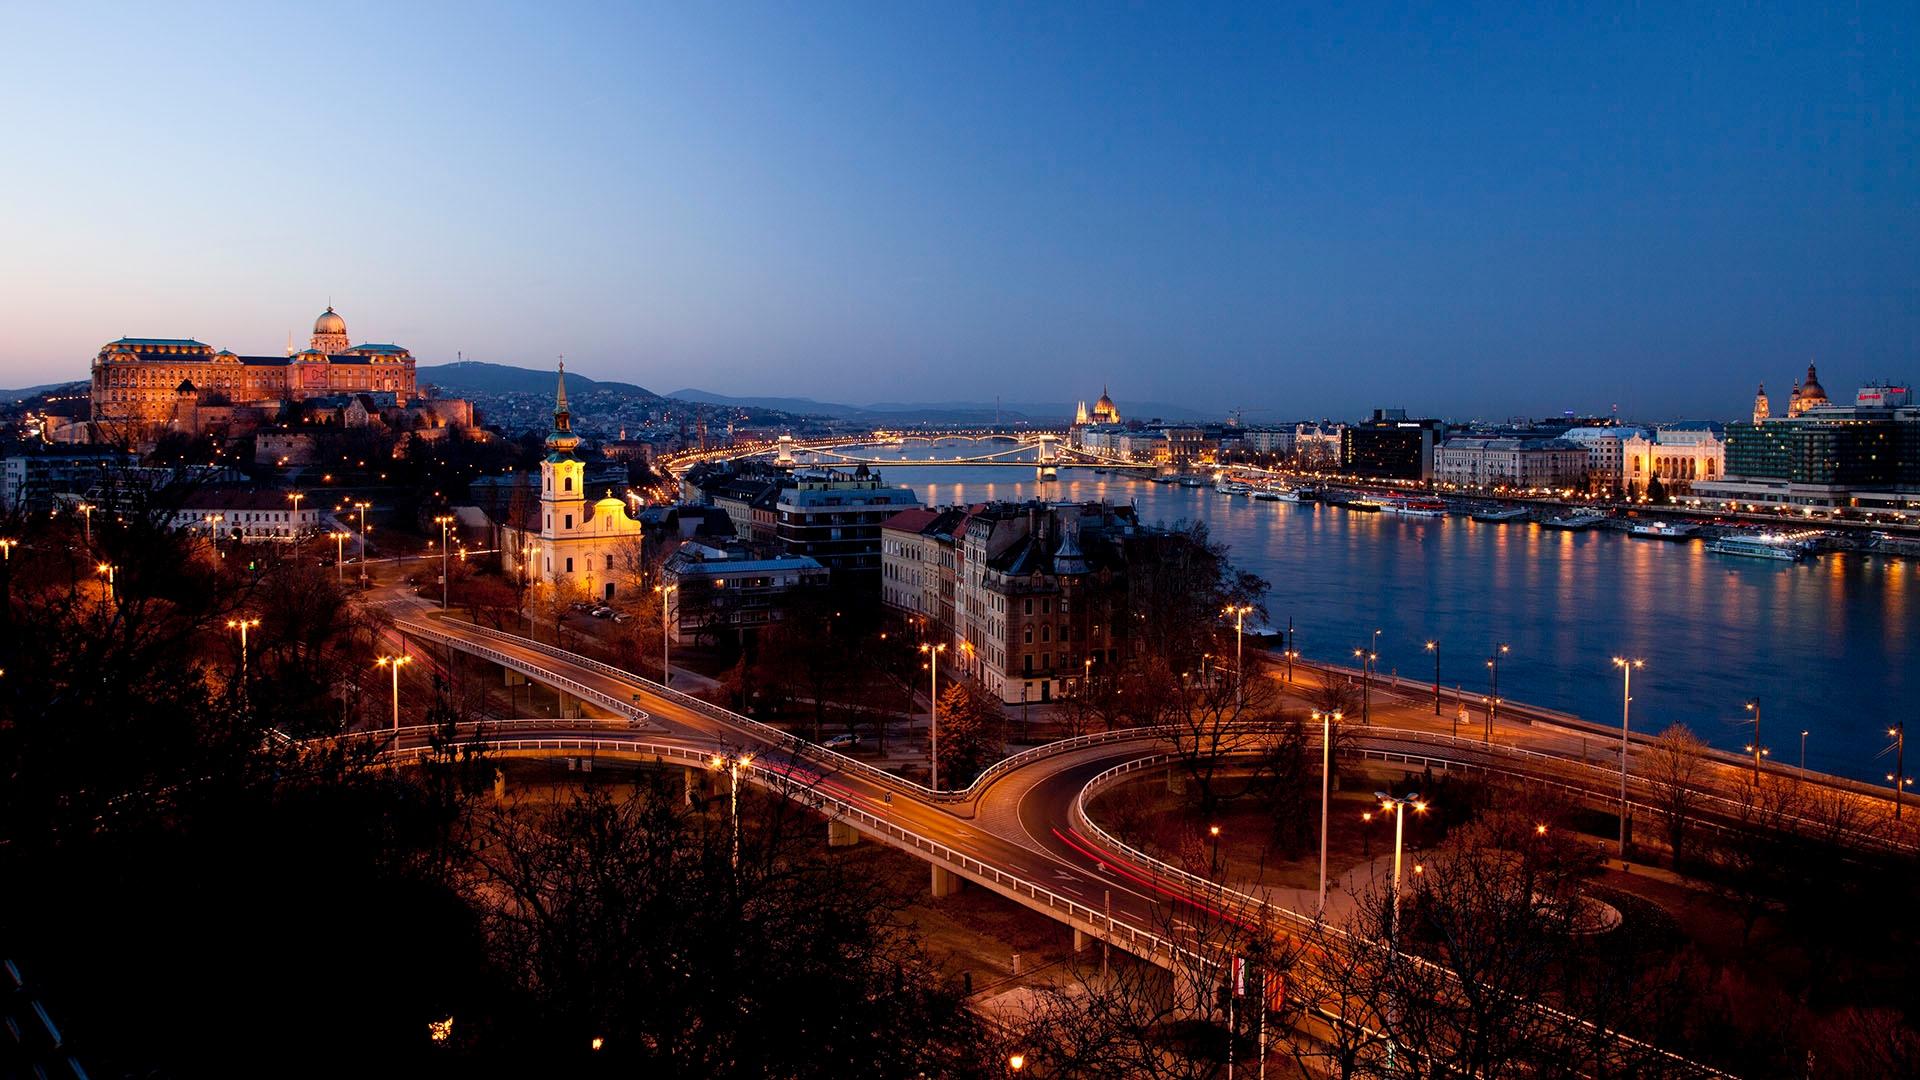 The Danube river